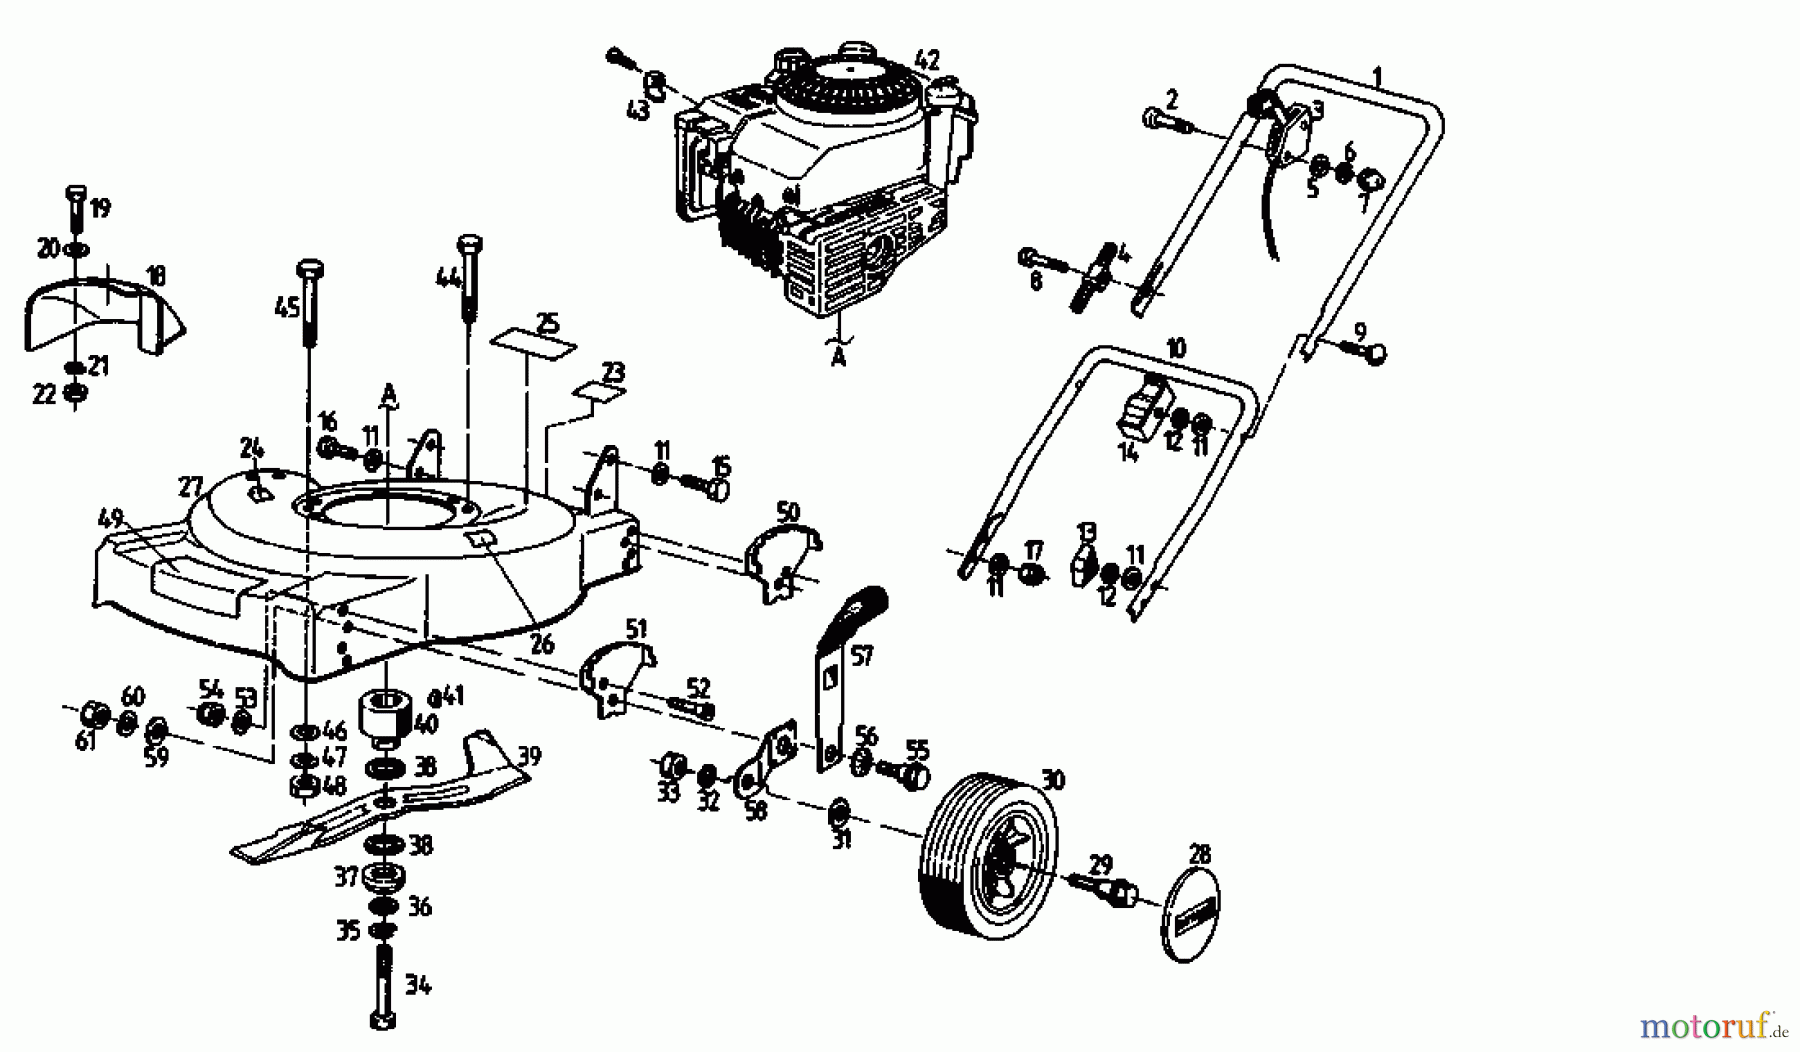  Gutbrod Motormäher TURBO SBS-48 02670.03  (1993) Grundgerät